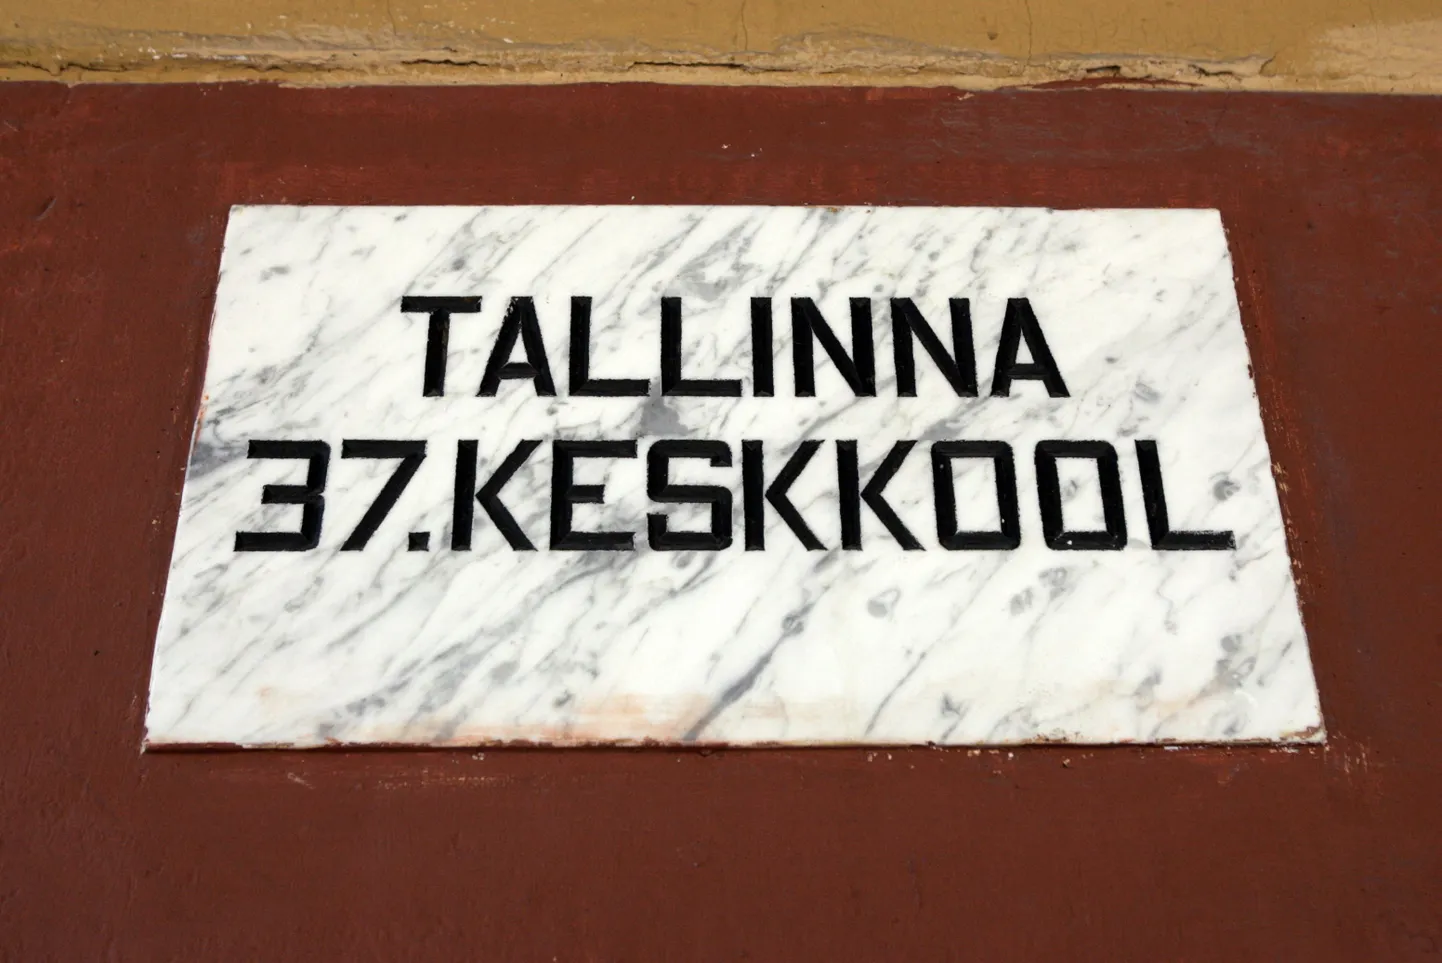 Tallinna. 37. keskkool.